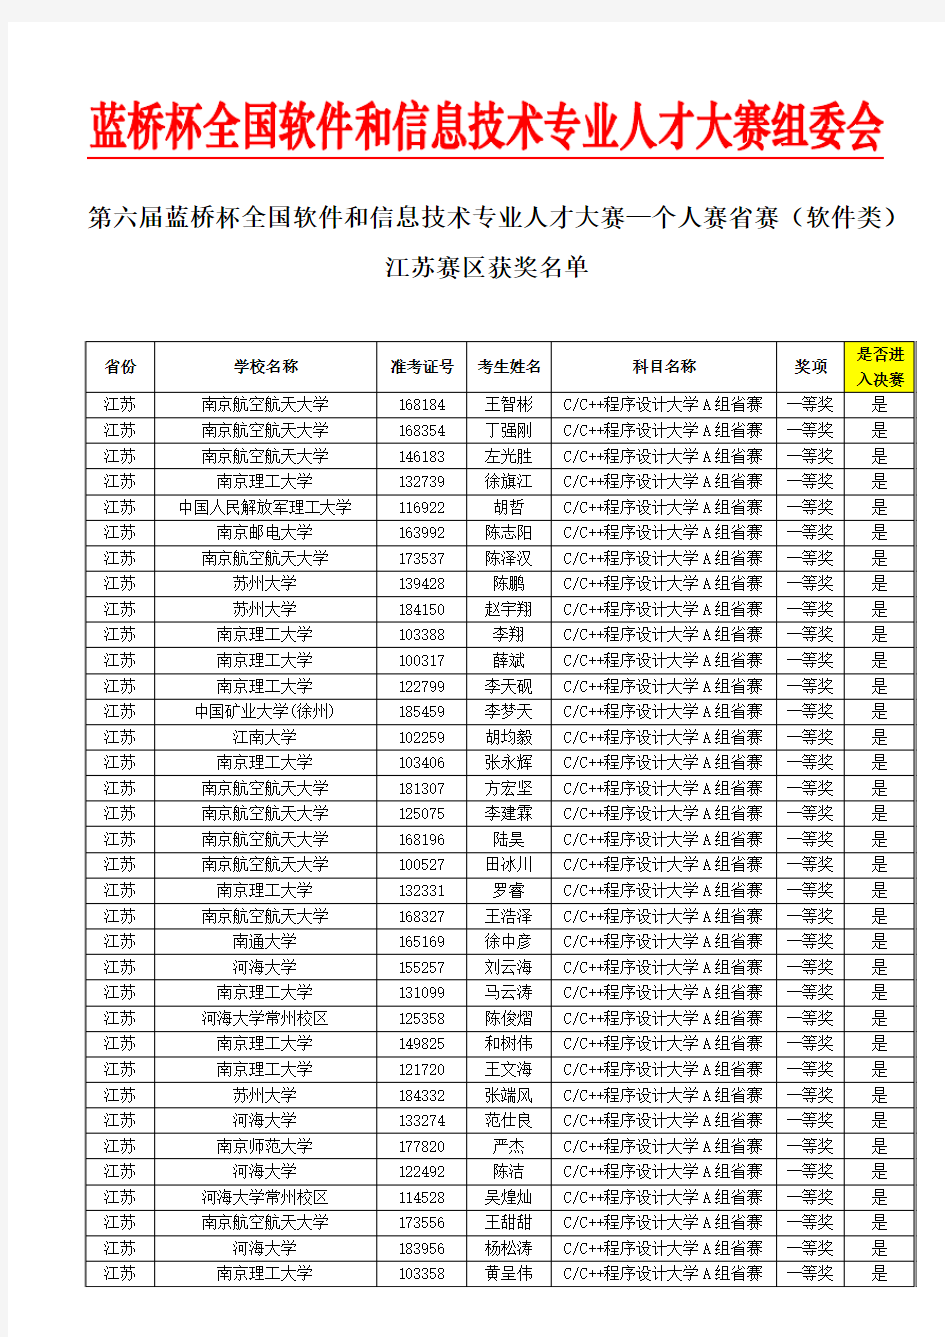 2015蓝桥杯-软件类-江苏赛区获奖名单